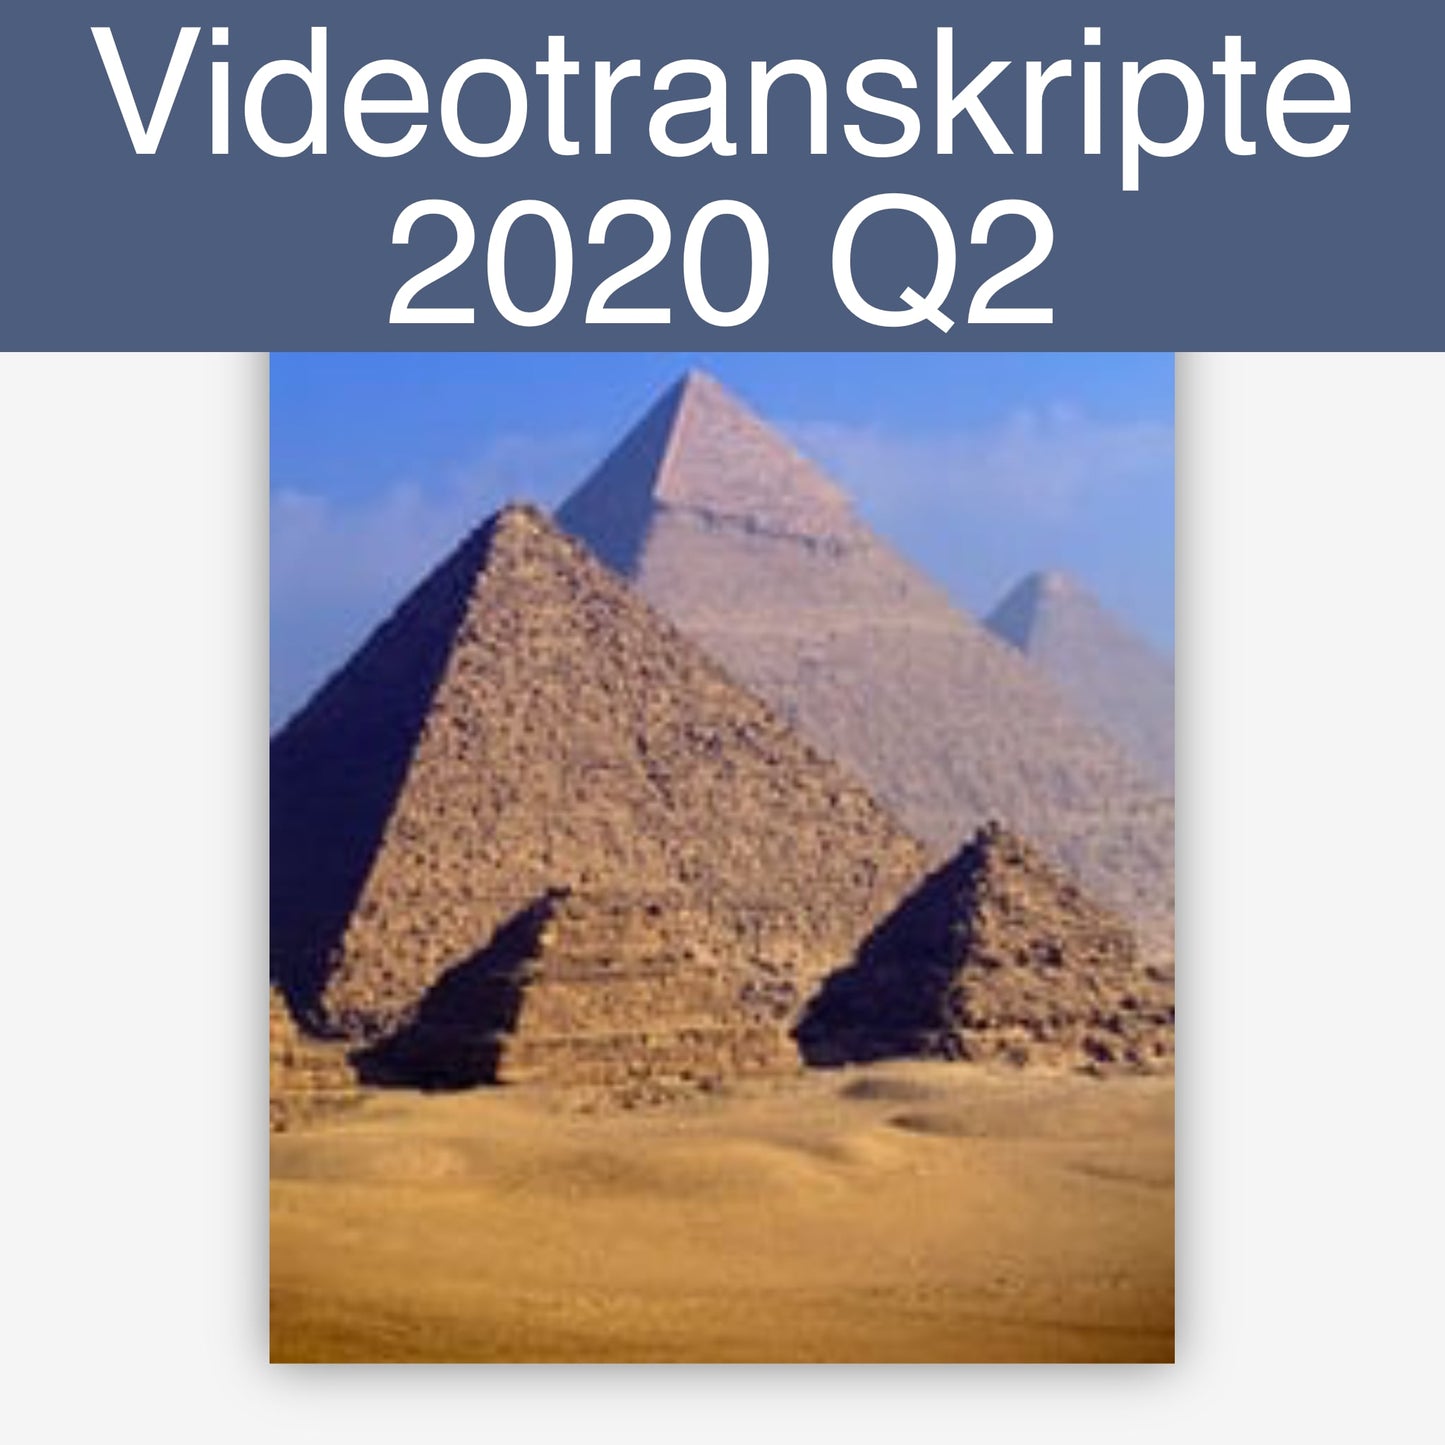 Videotranskripte 2020 Q2